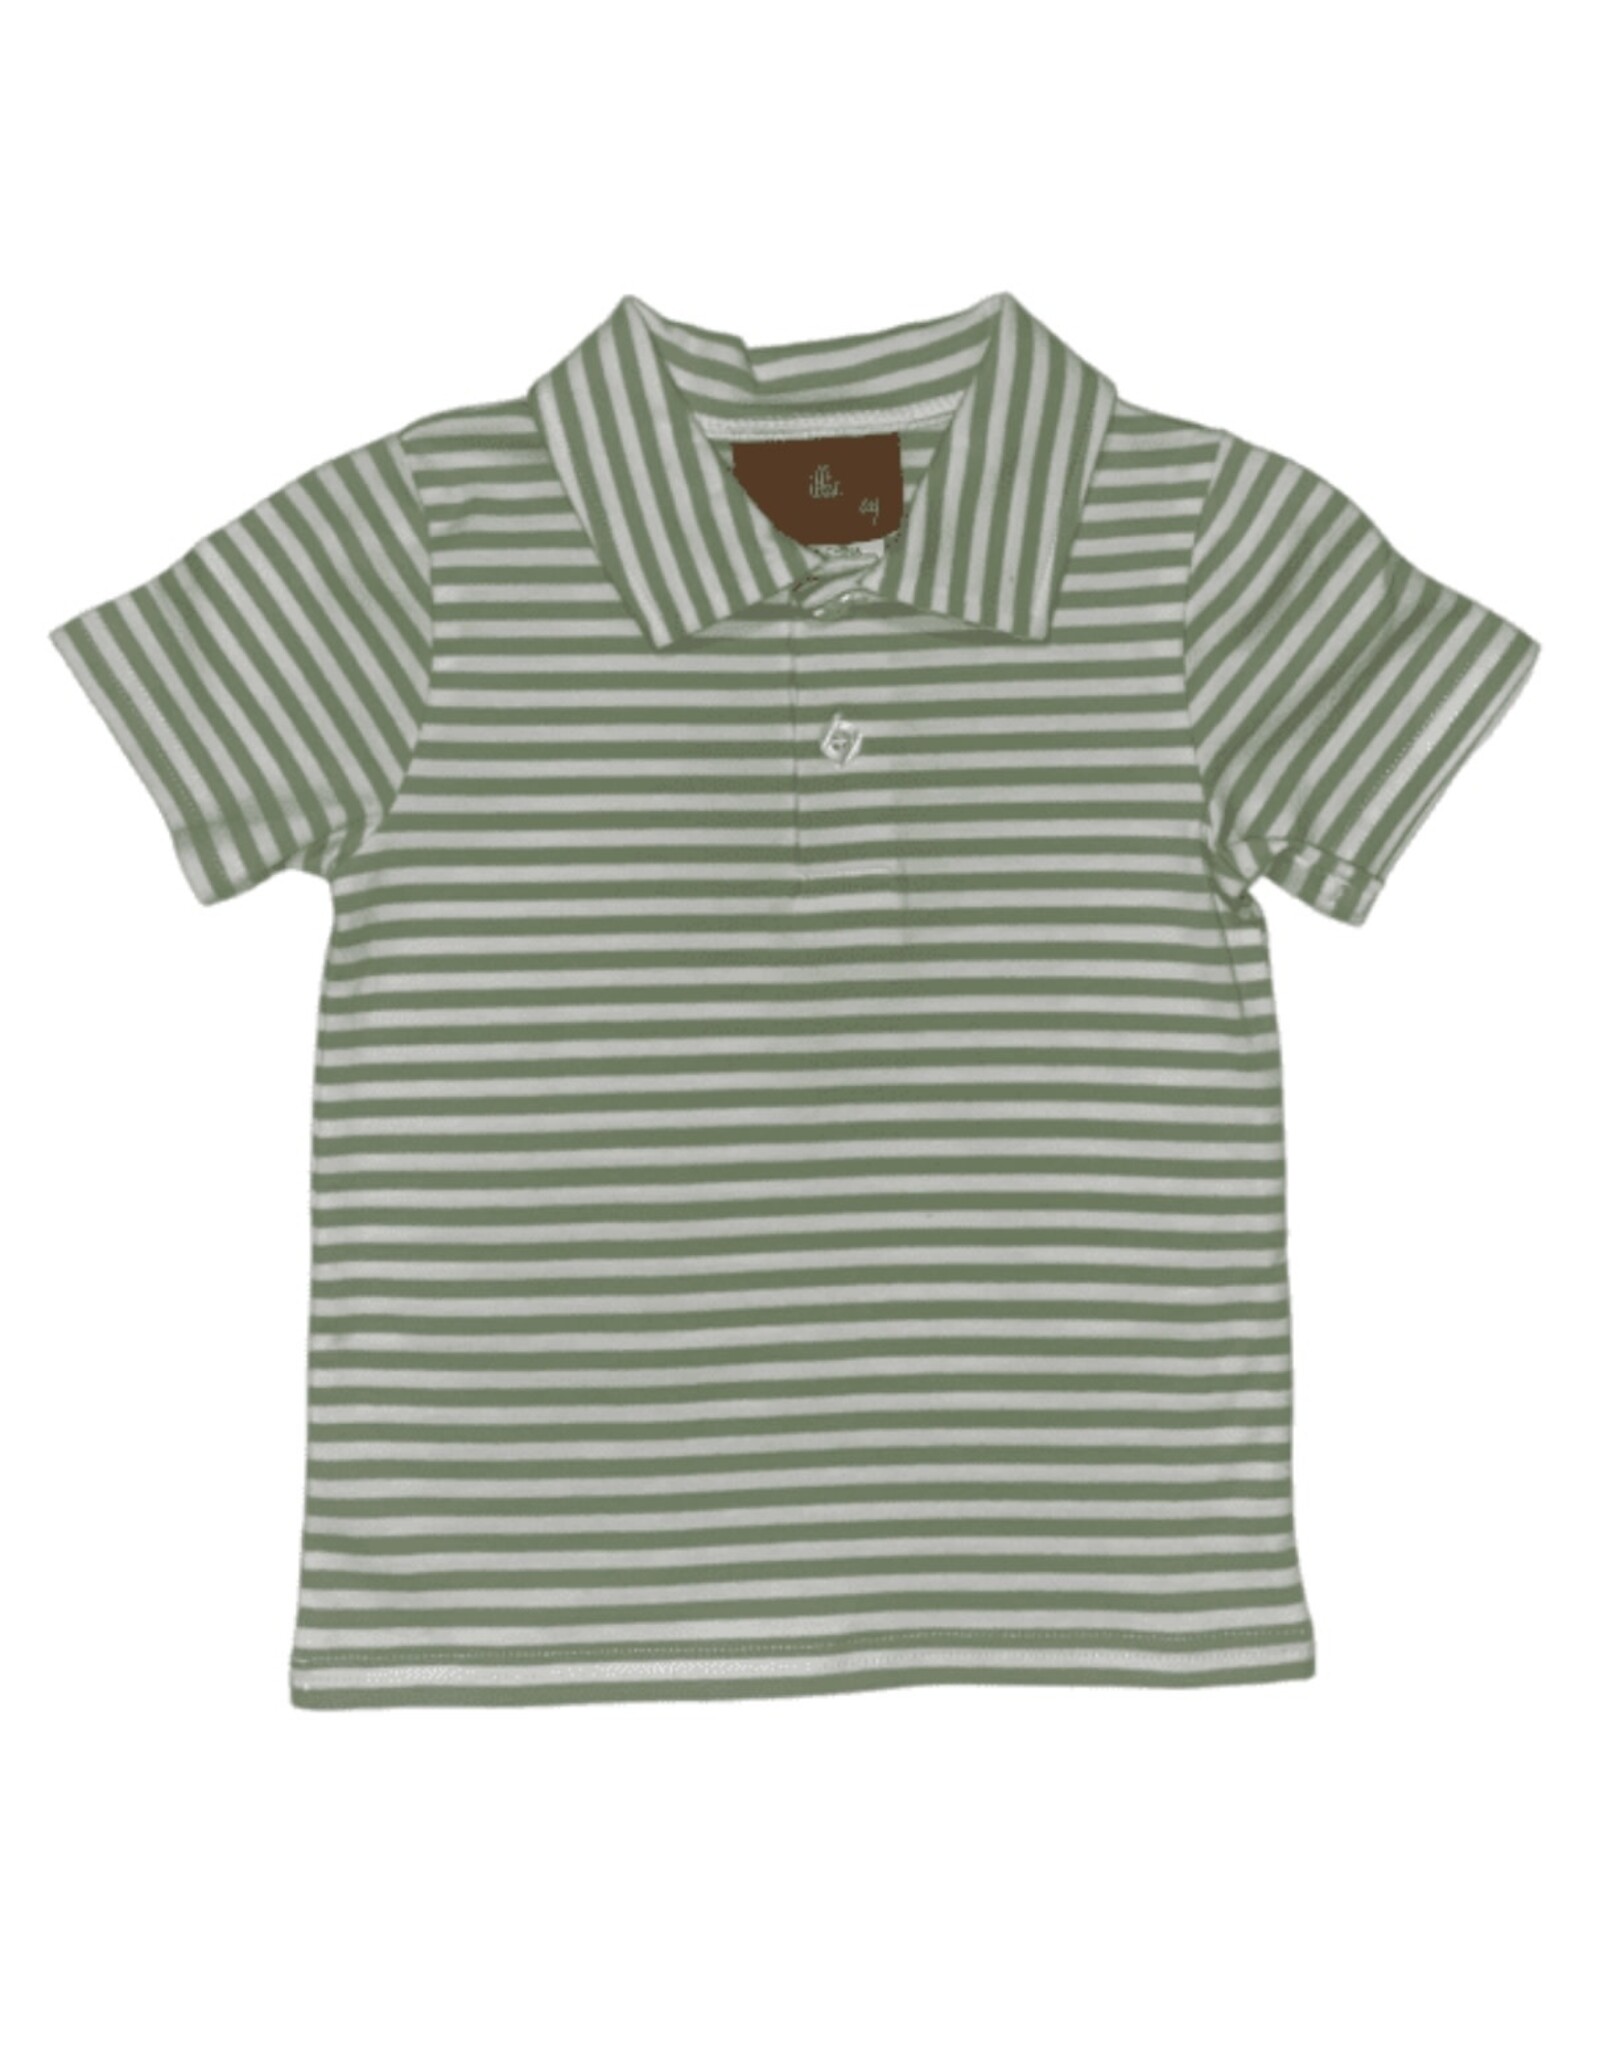 Millie Jay Millie Jay- Bennett Shirt: Green Stripe